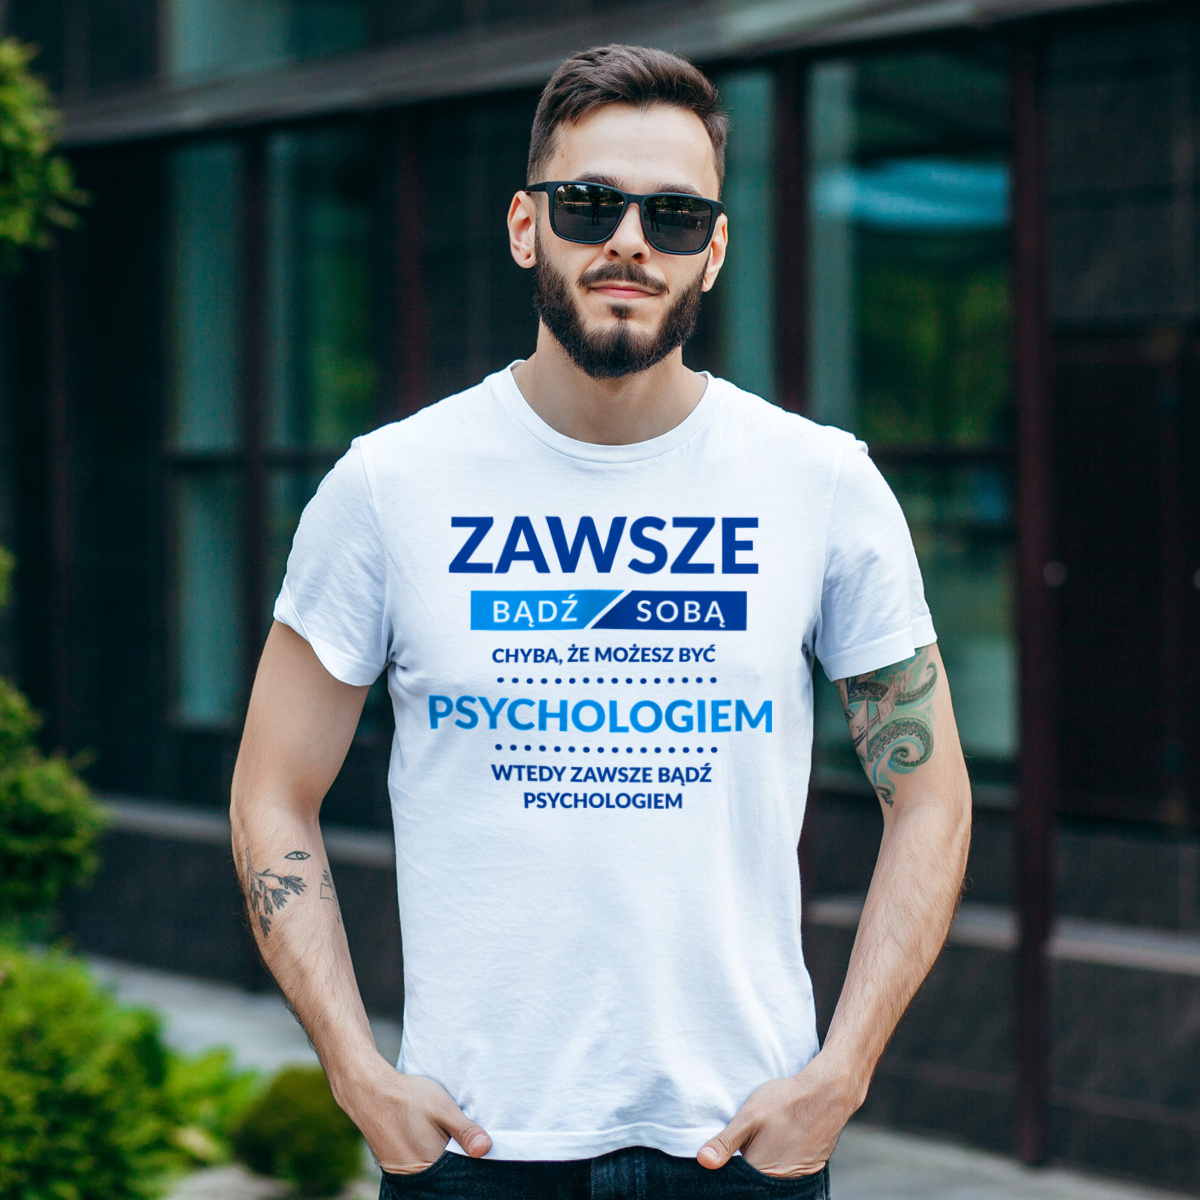 Zawsze Bądź Sobą, Chyba Że Możesz Być Psychologiem - Męska Koszulka Biała